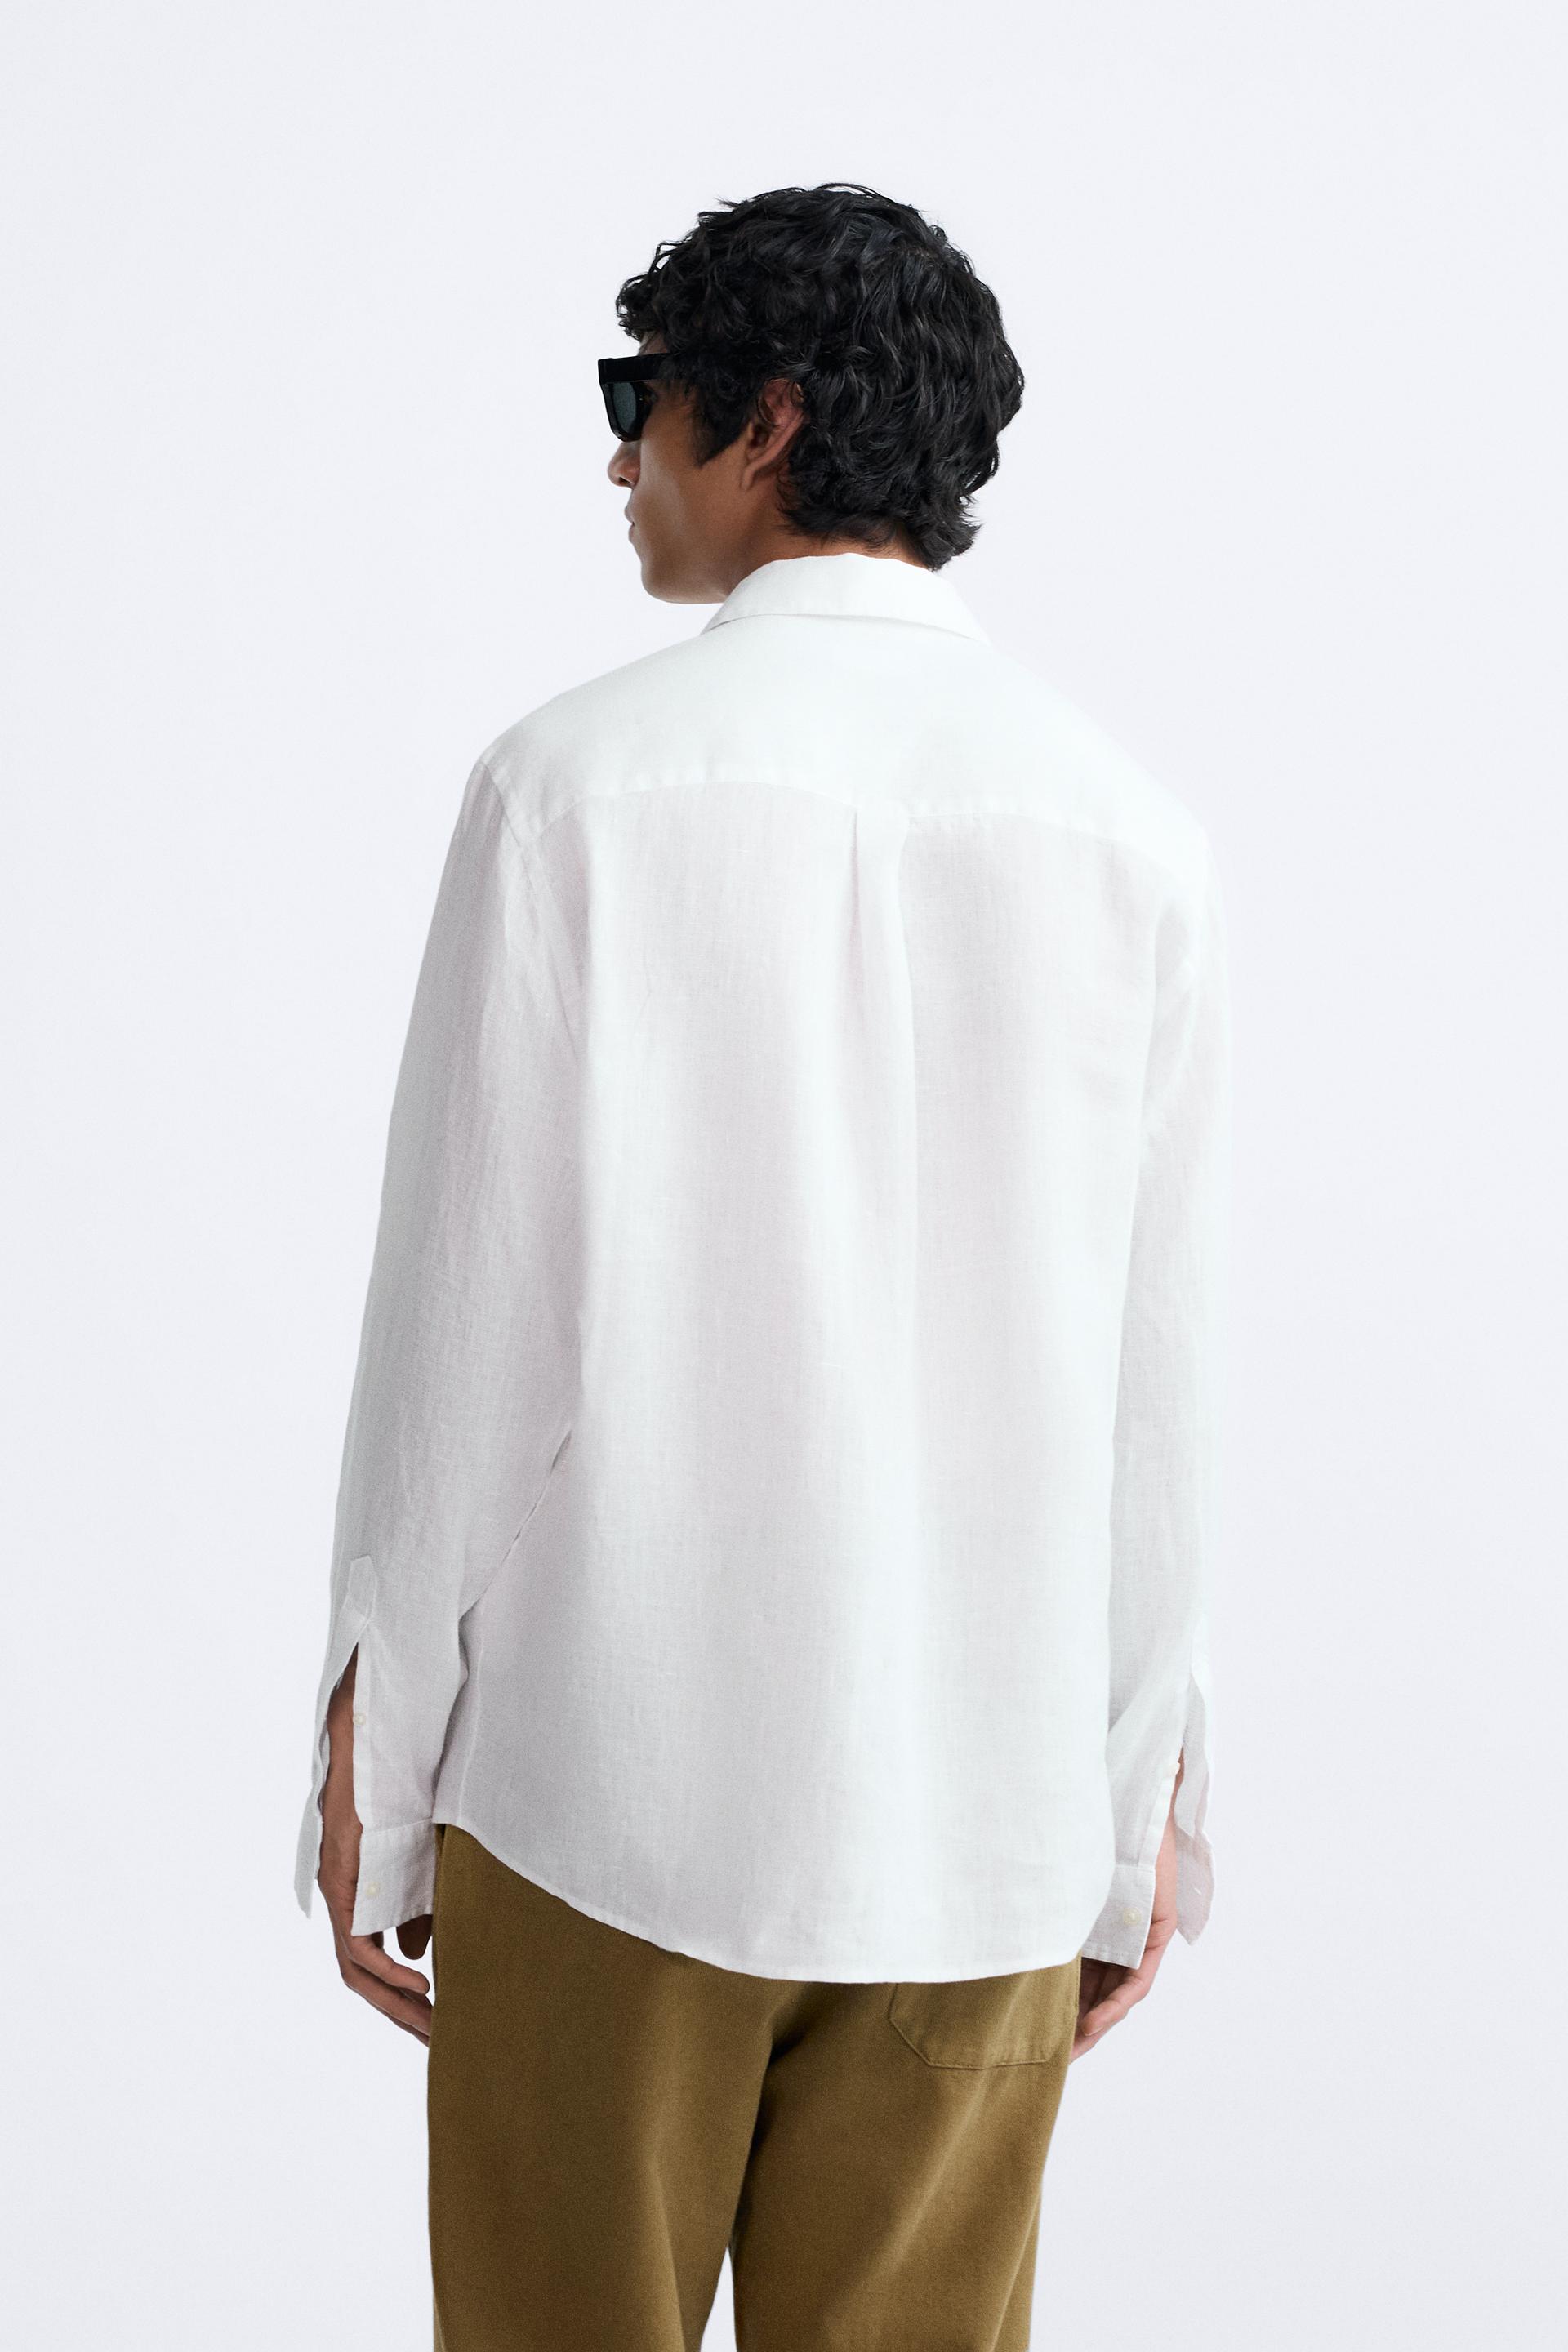 100% European Linen Shirt Dress curated on LTK